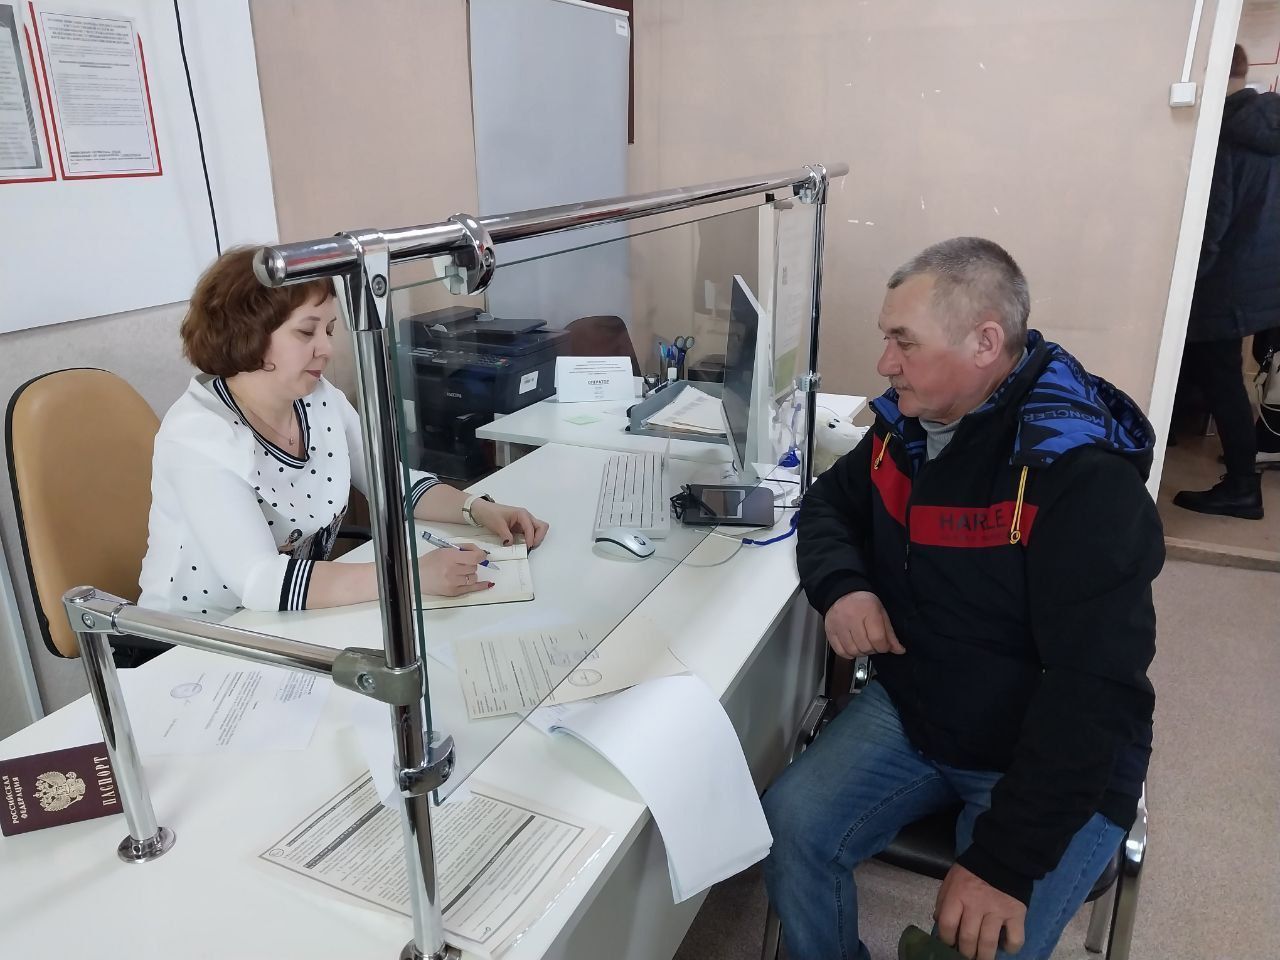 В Ульяновской области пройдёт Всероссийский единый день оказания бесплатной юридической помощи